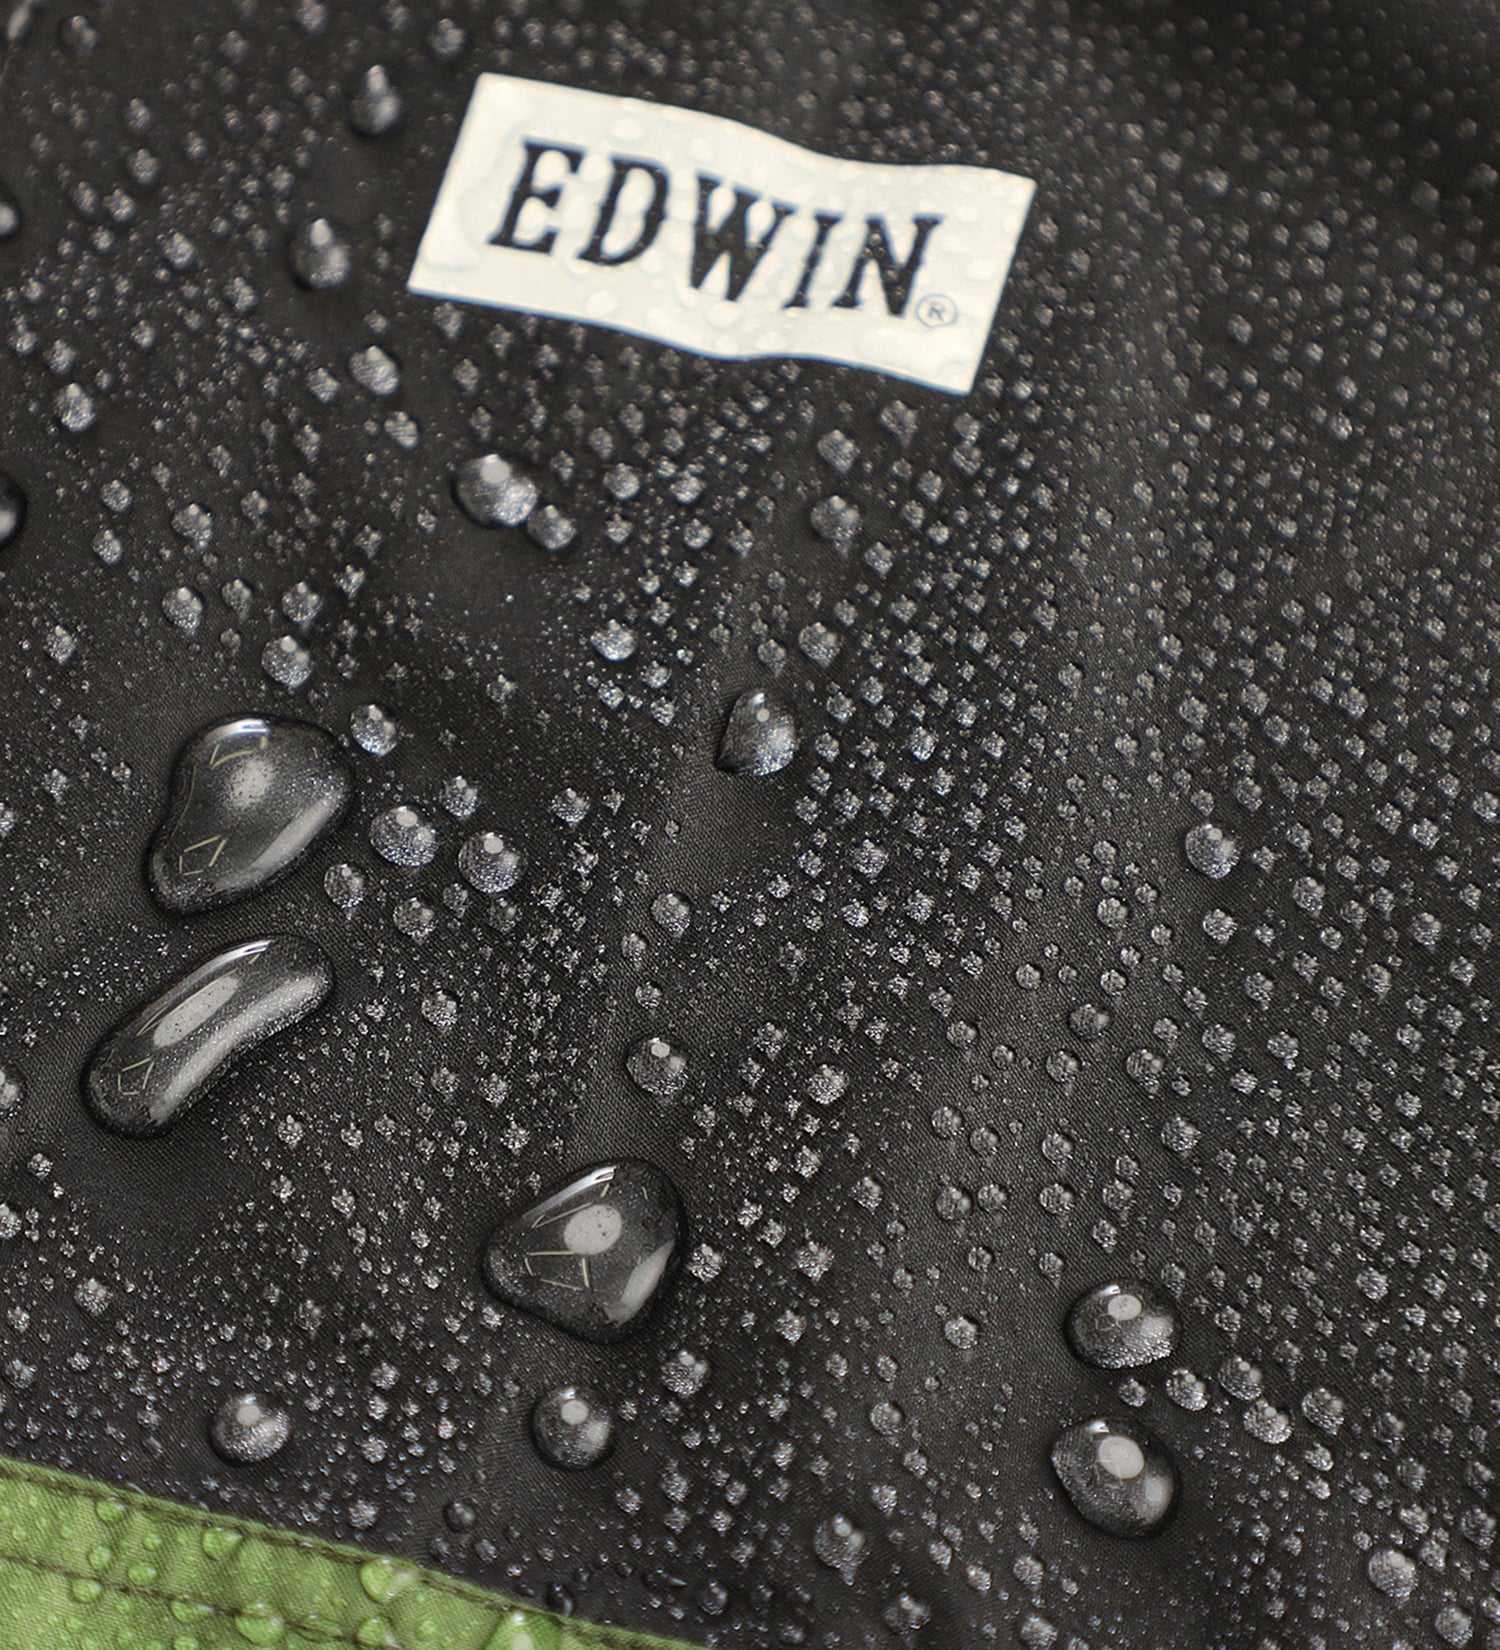 EDWIN(エドウイン)の【GW SALE】EDWIN レインパーカー|ファッション雑貨/レインウェア/ポンチョ/メンズ|カーキ